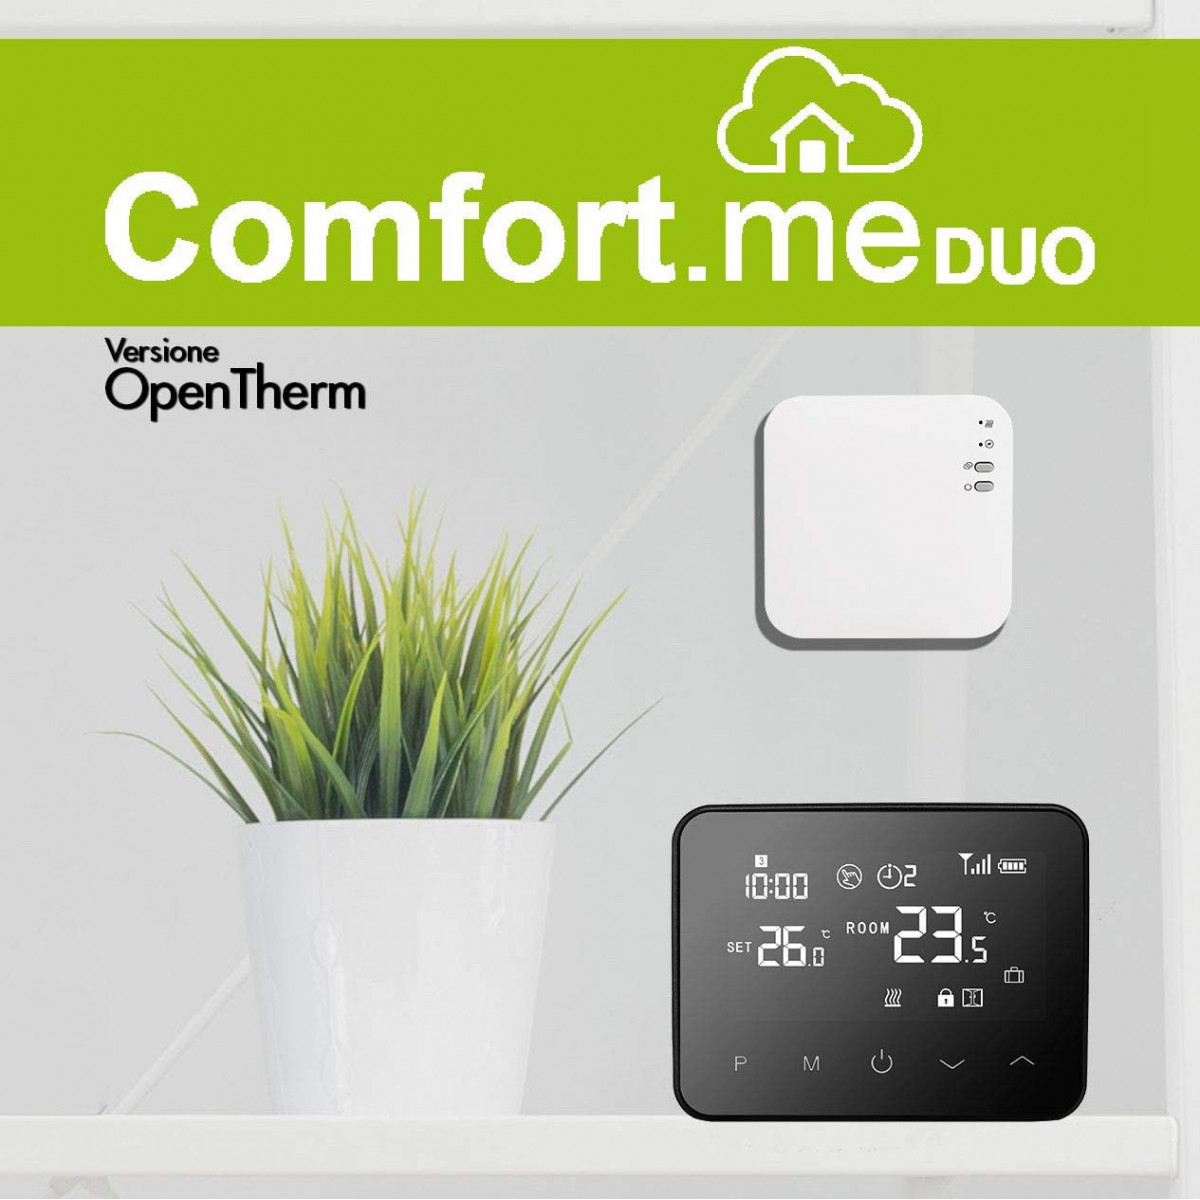 Comfort.me DUO, Il termostato wireless per tutte le caldaie